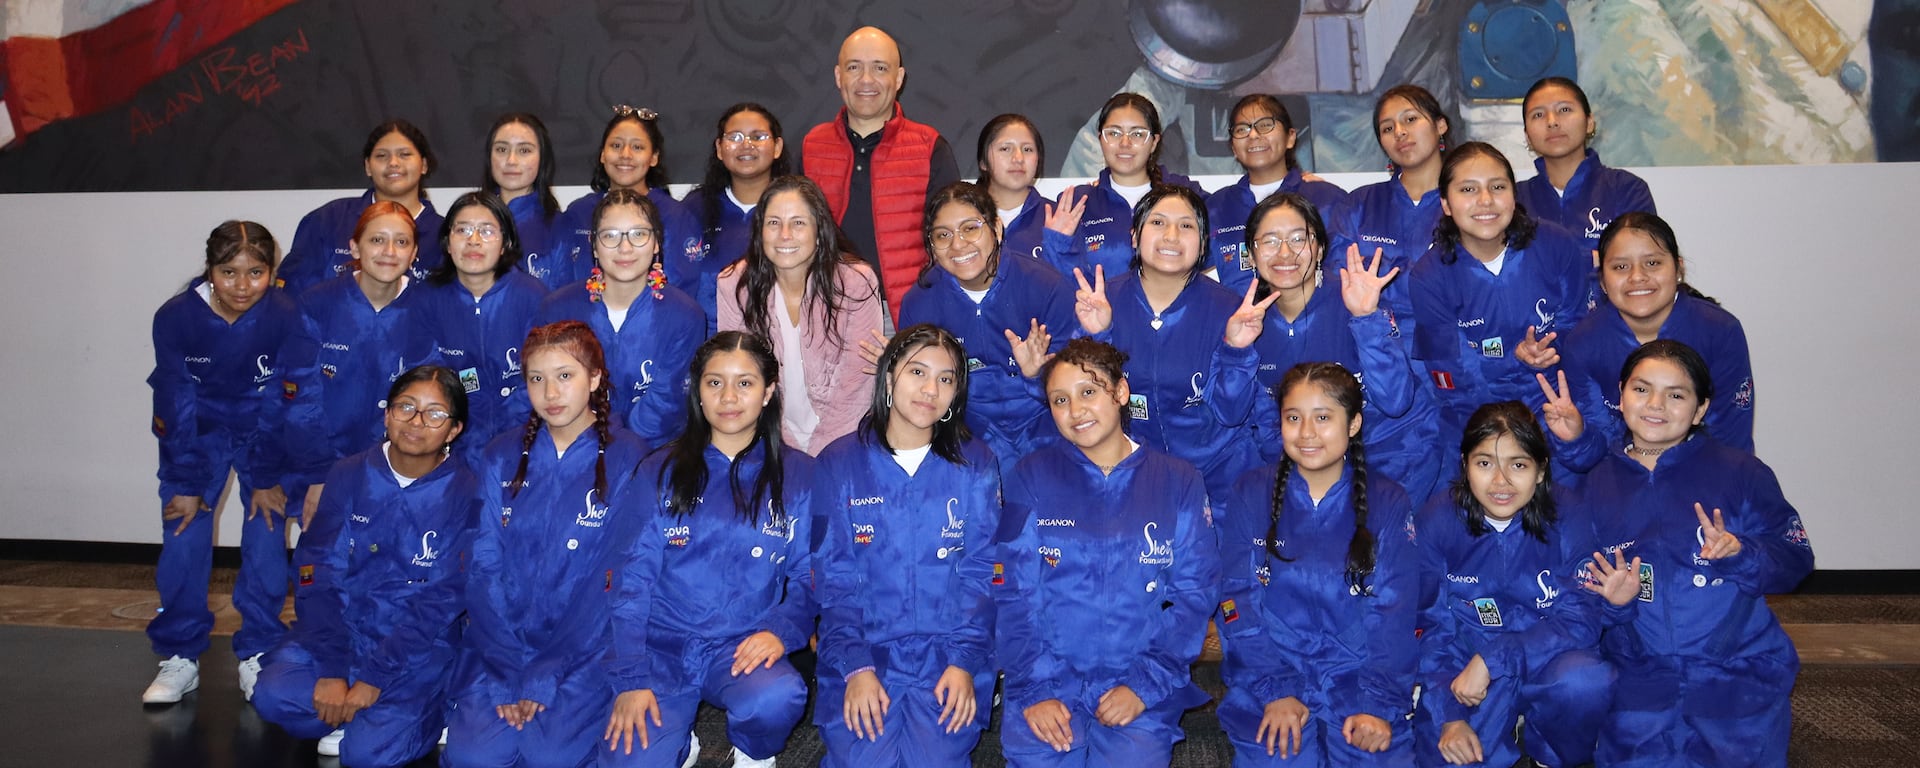 Conocer la Nasa es posible: niñas peruanas y de toda la región pueden vivir la experiencia gracias a esta iniciativa